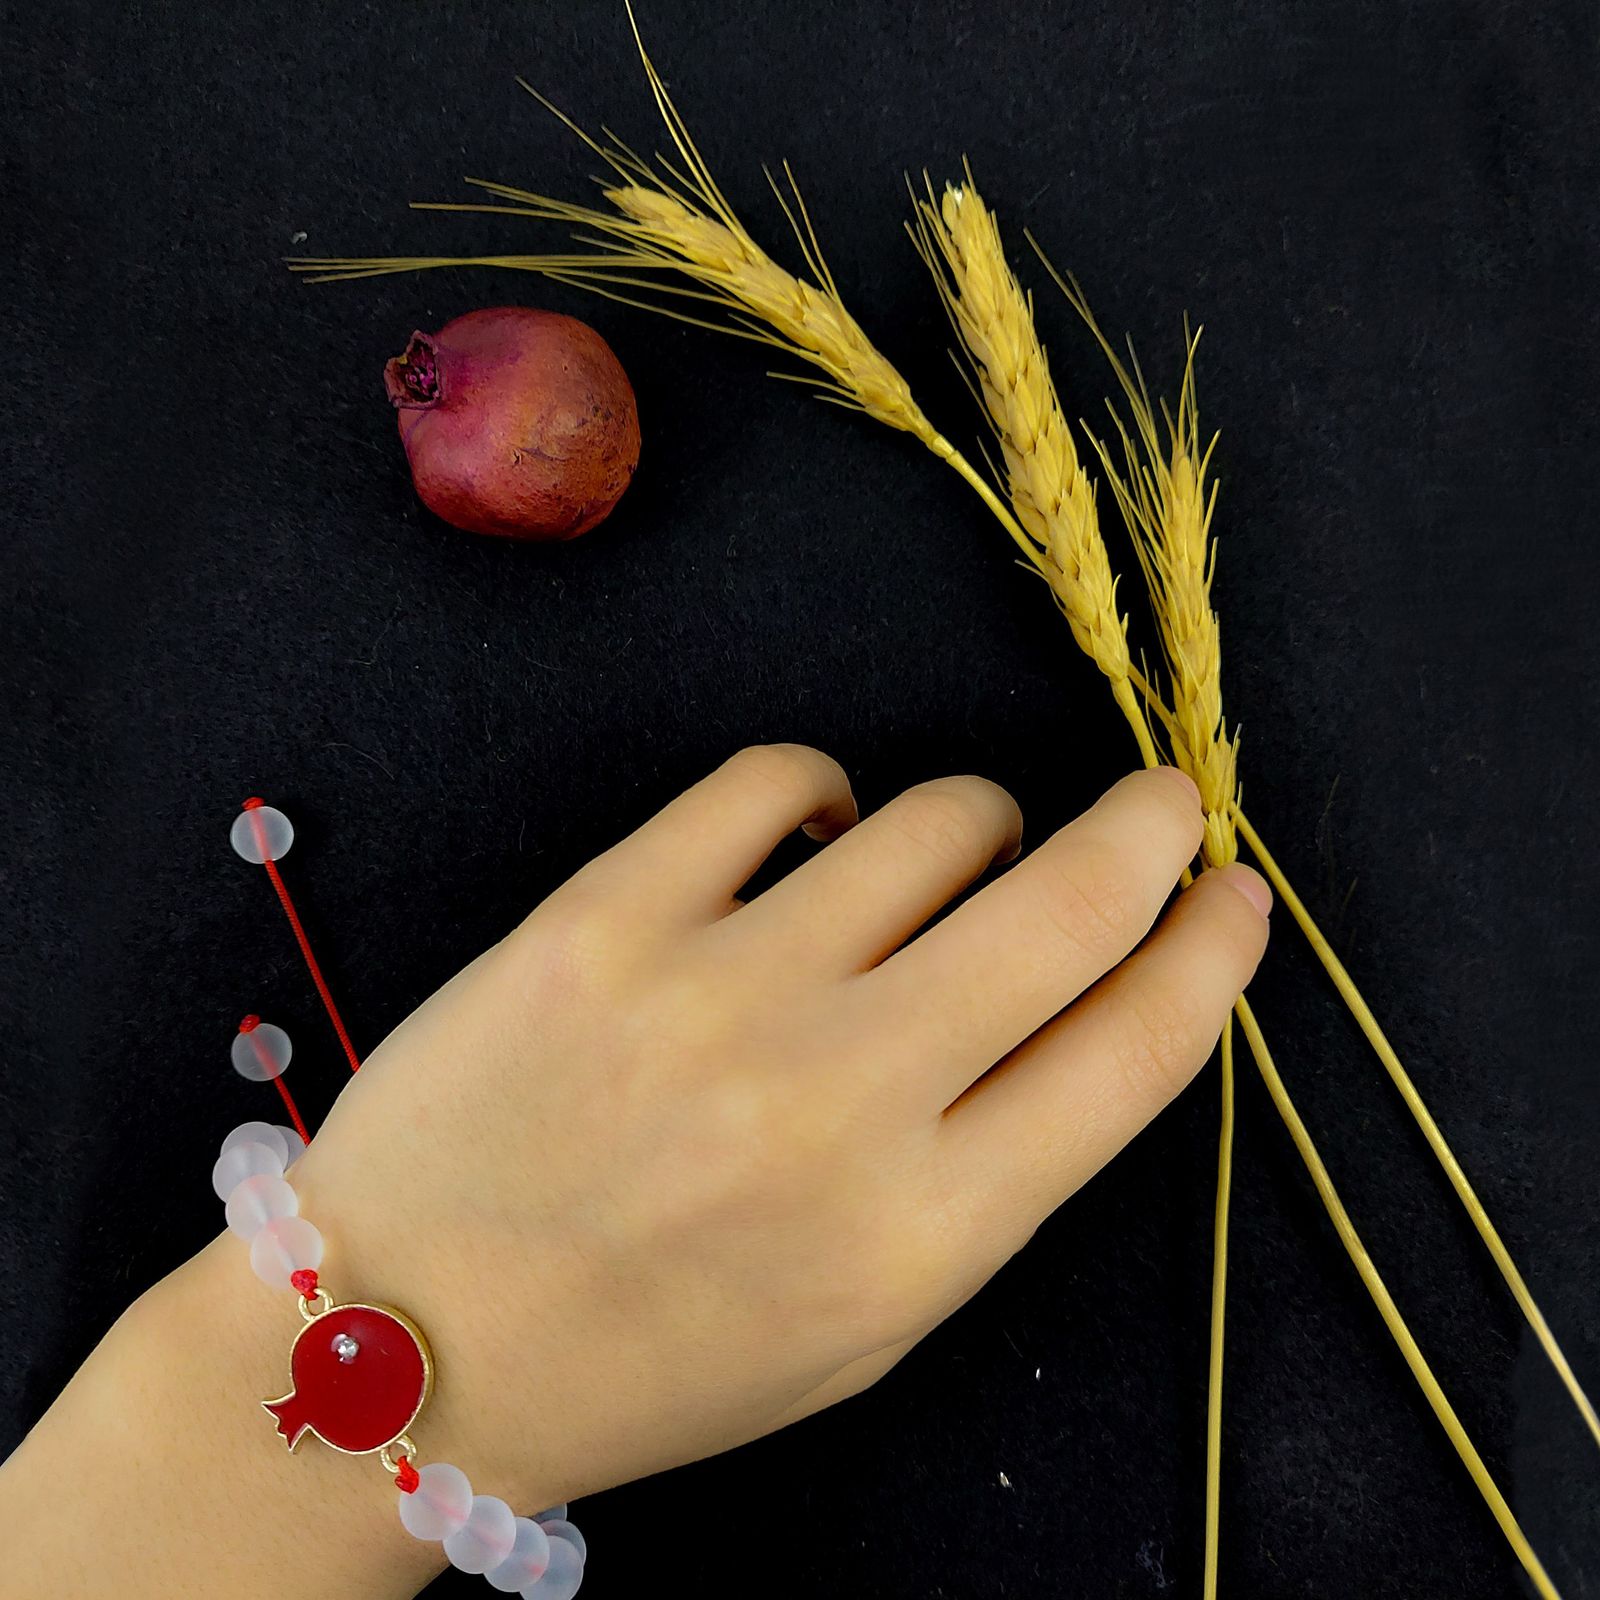 دستبند زنانه مدل انار طرح یلدا کد G1104 -  - 4